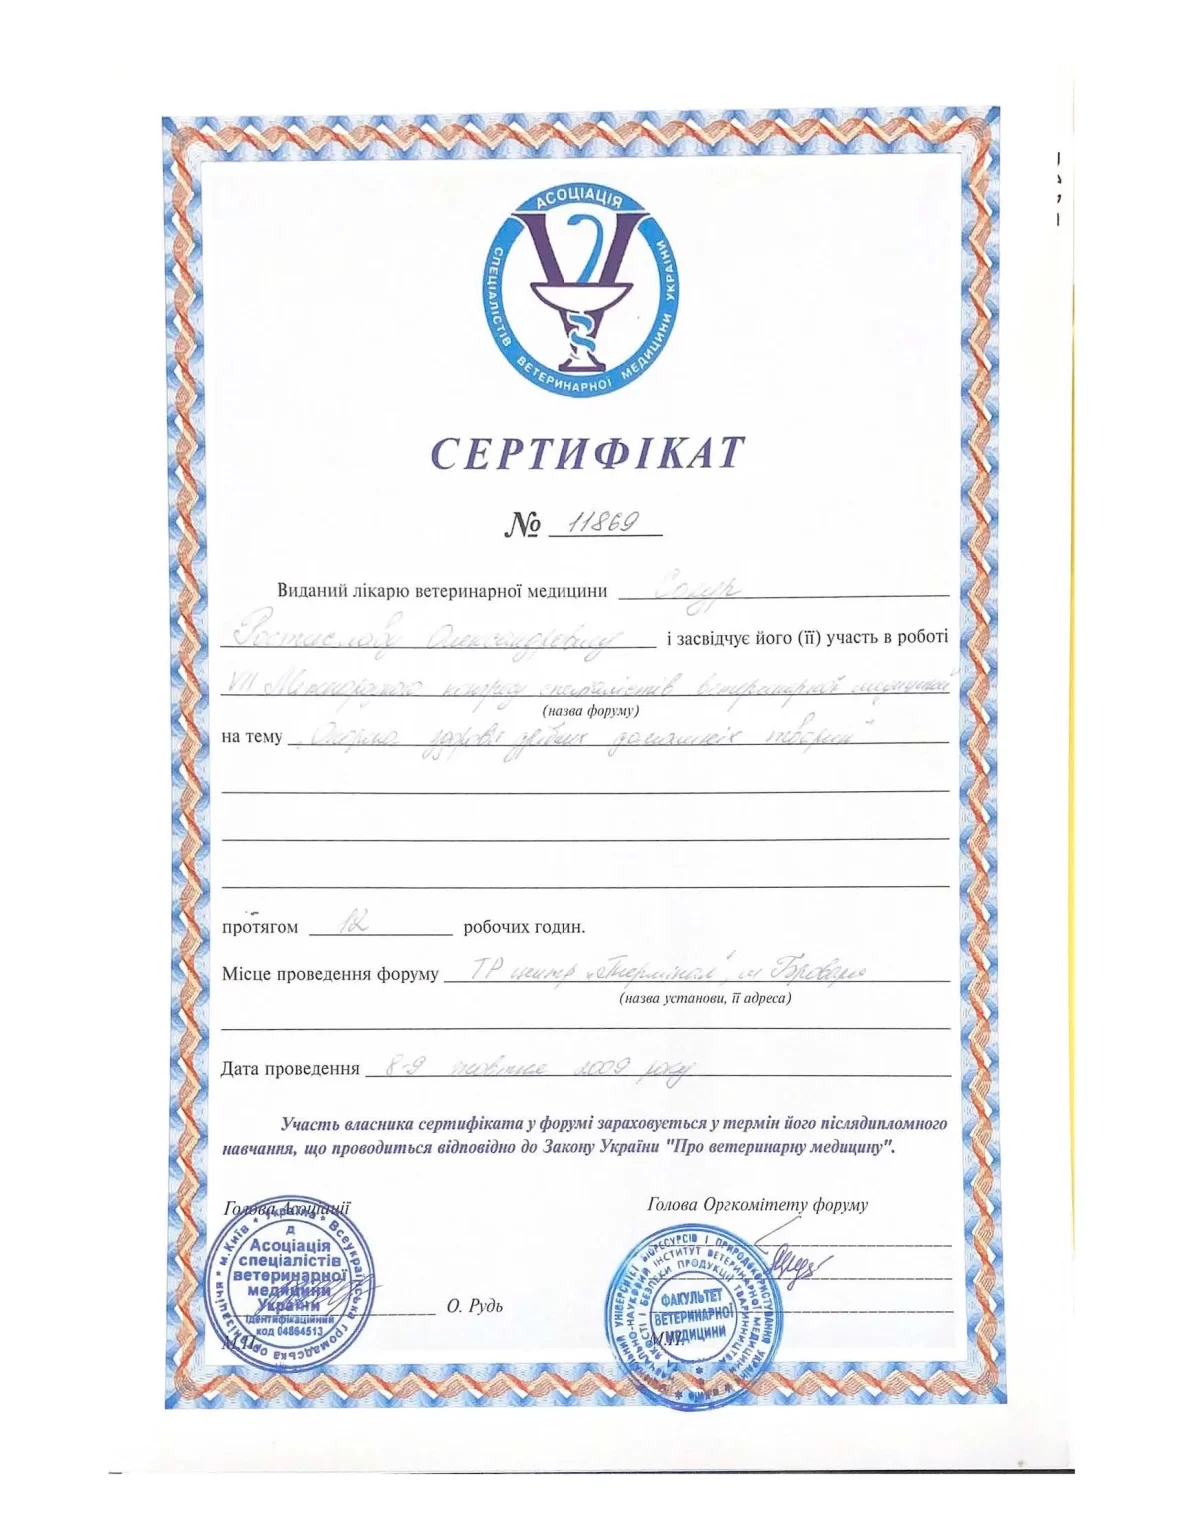 Р.Сокур сертифікат лікаря ветеринара